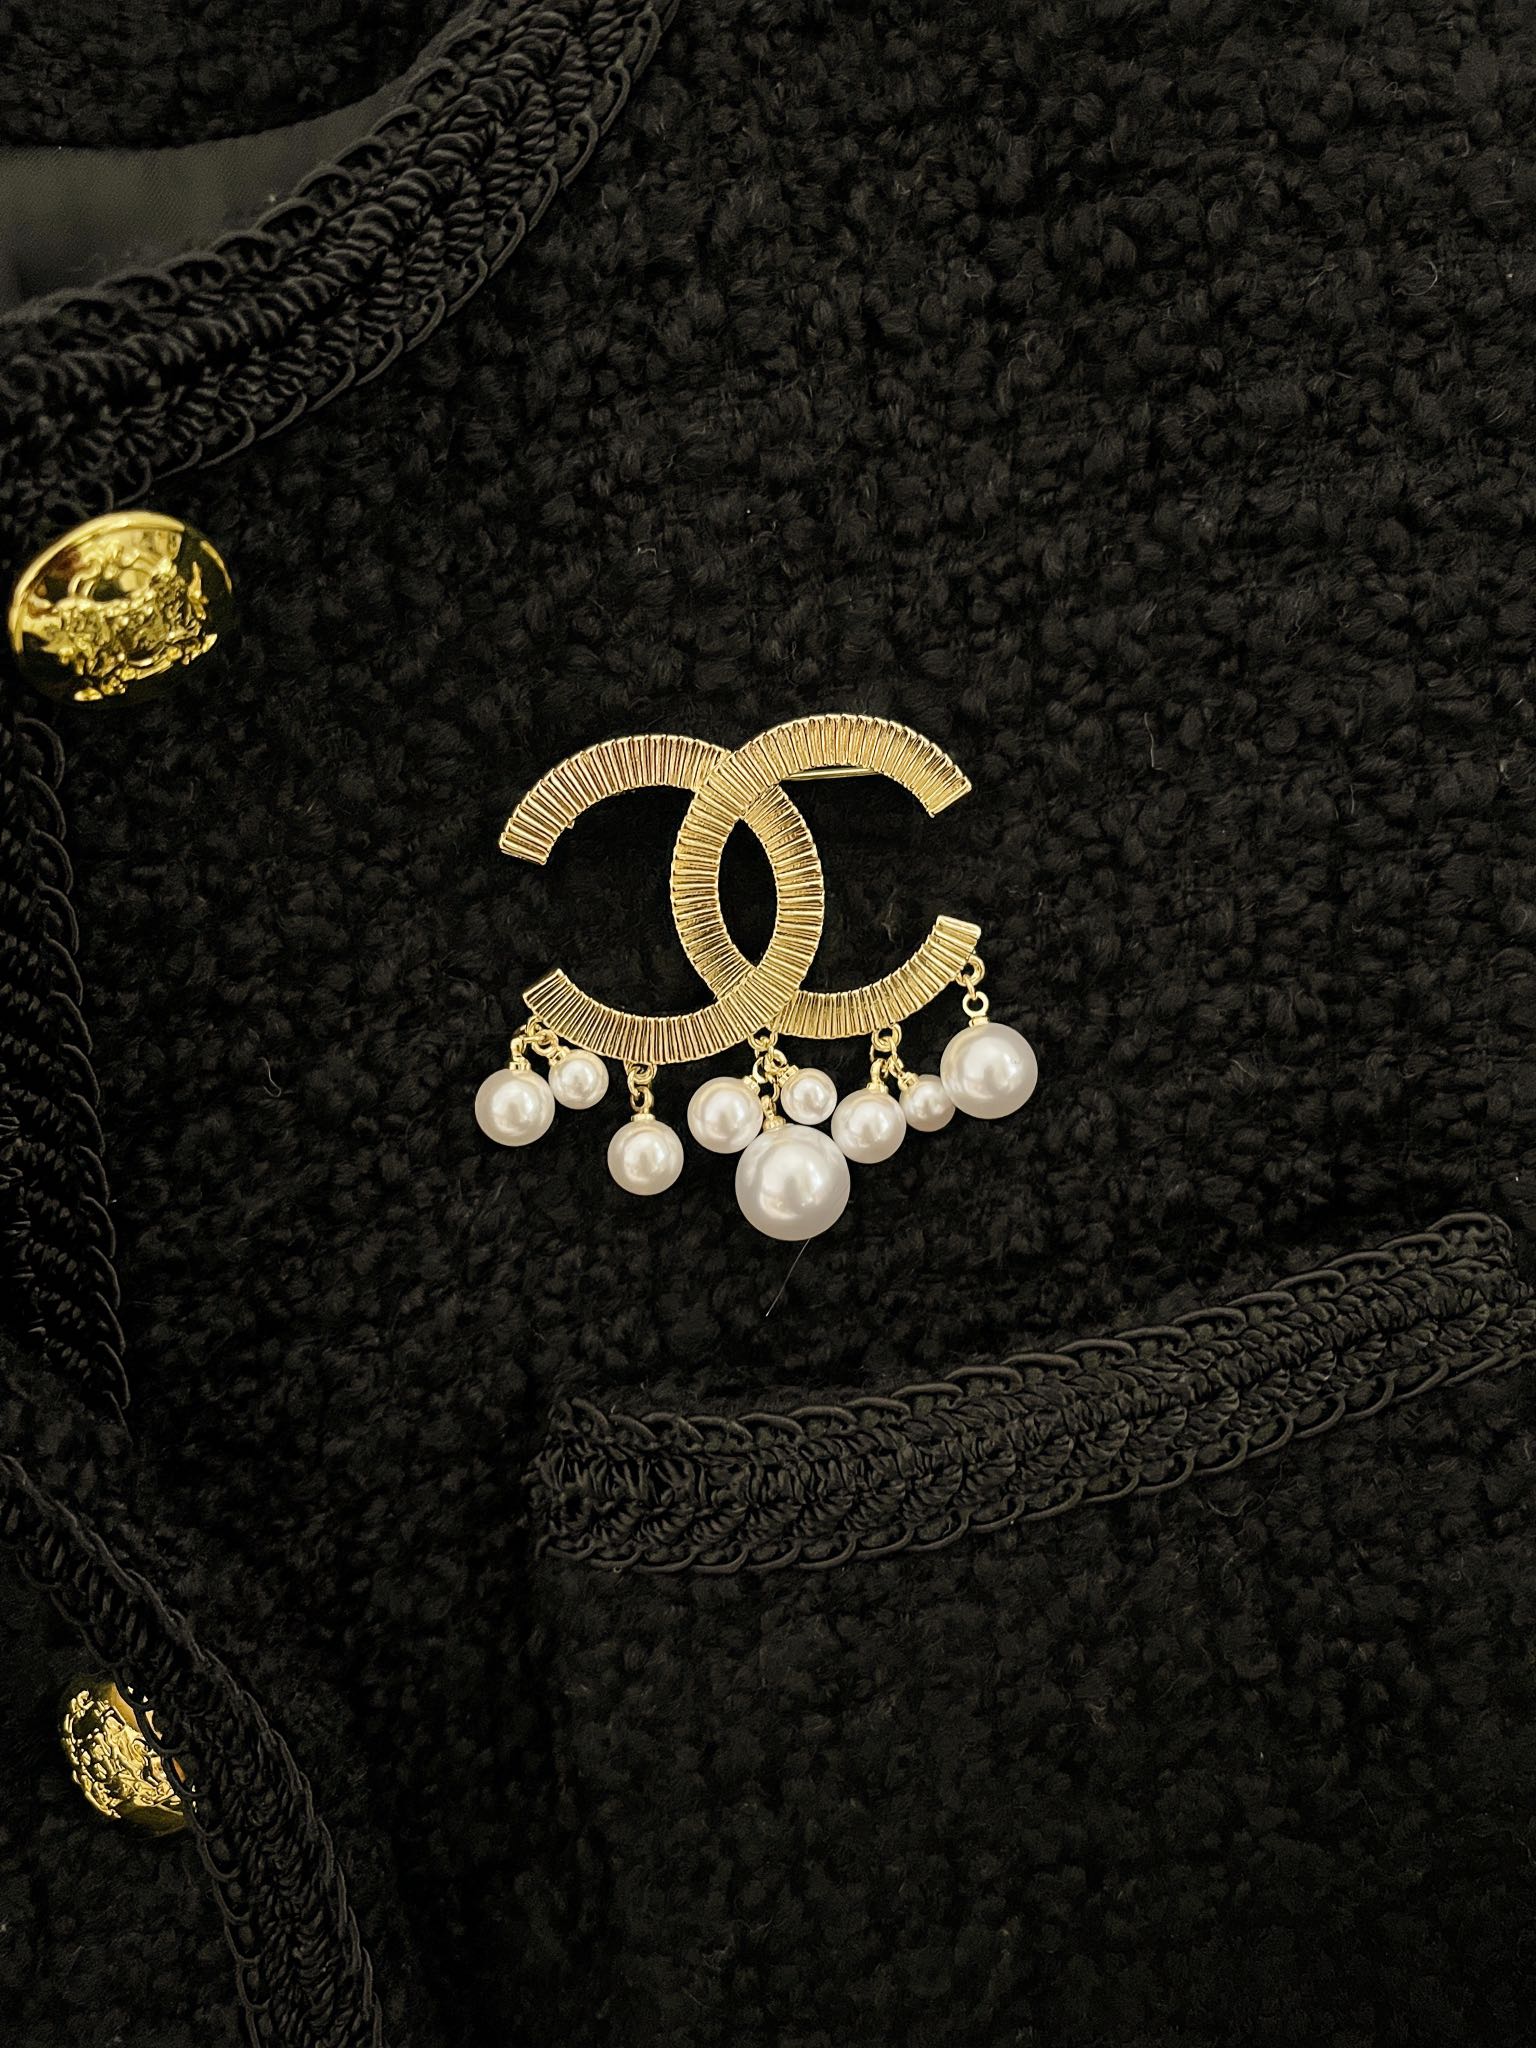 D148 Chanel brooch